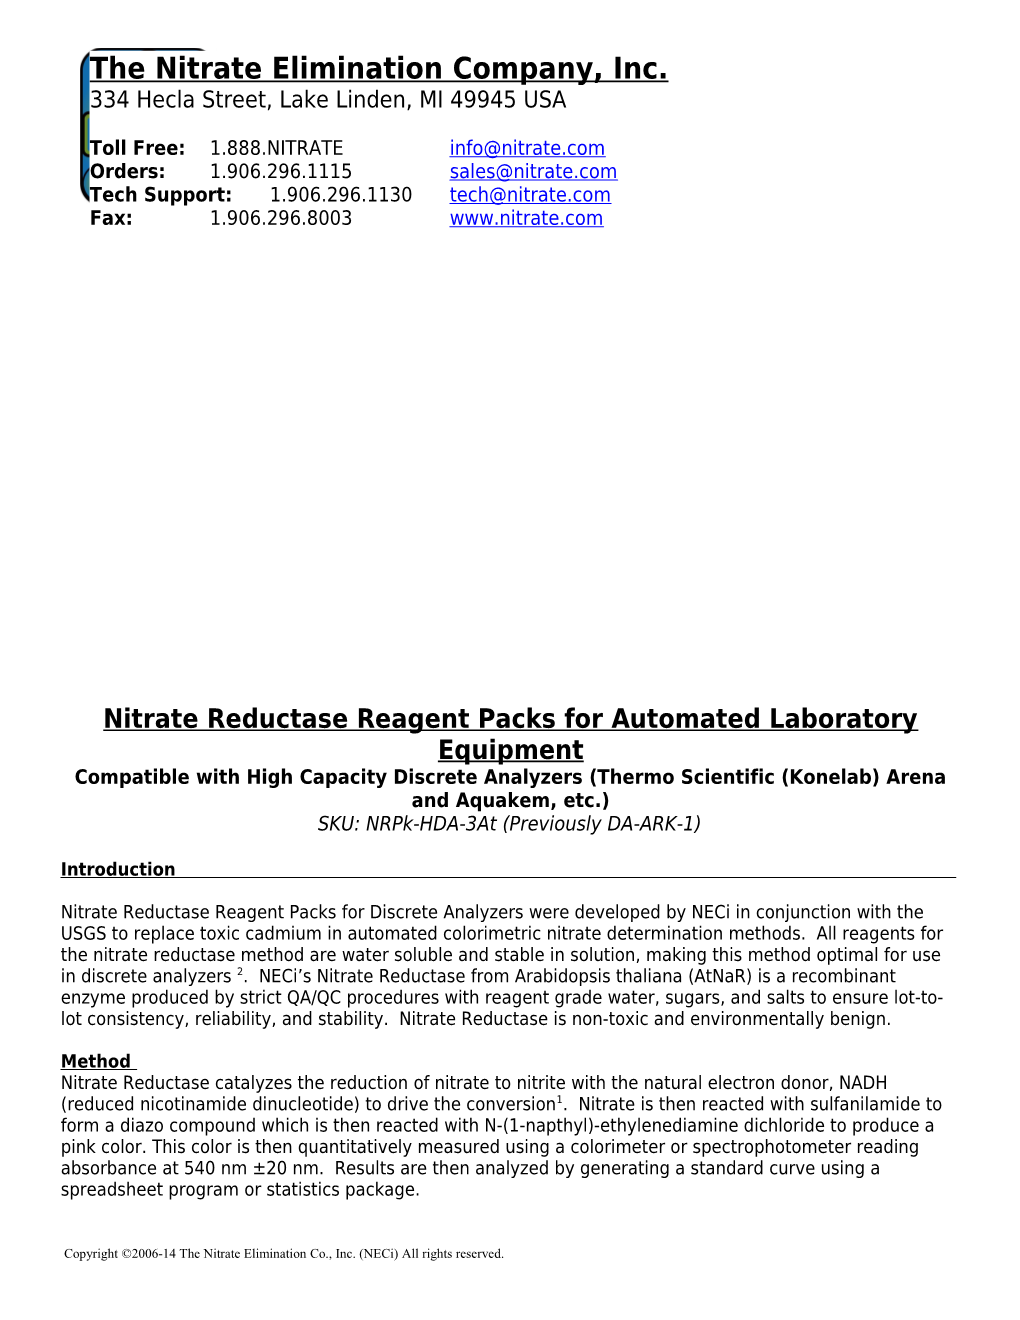 Autoanalyzer Reagent Kits for Discrete Analyzers (DA-ARK)